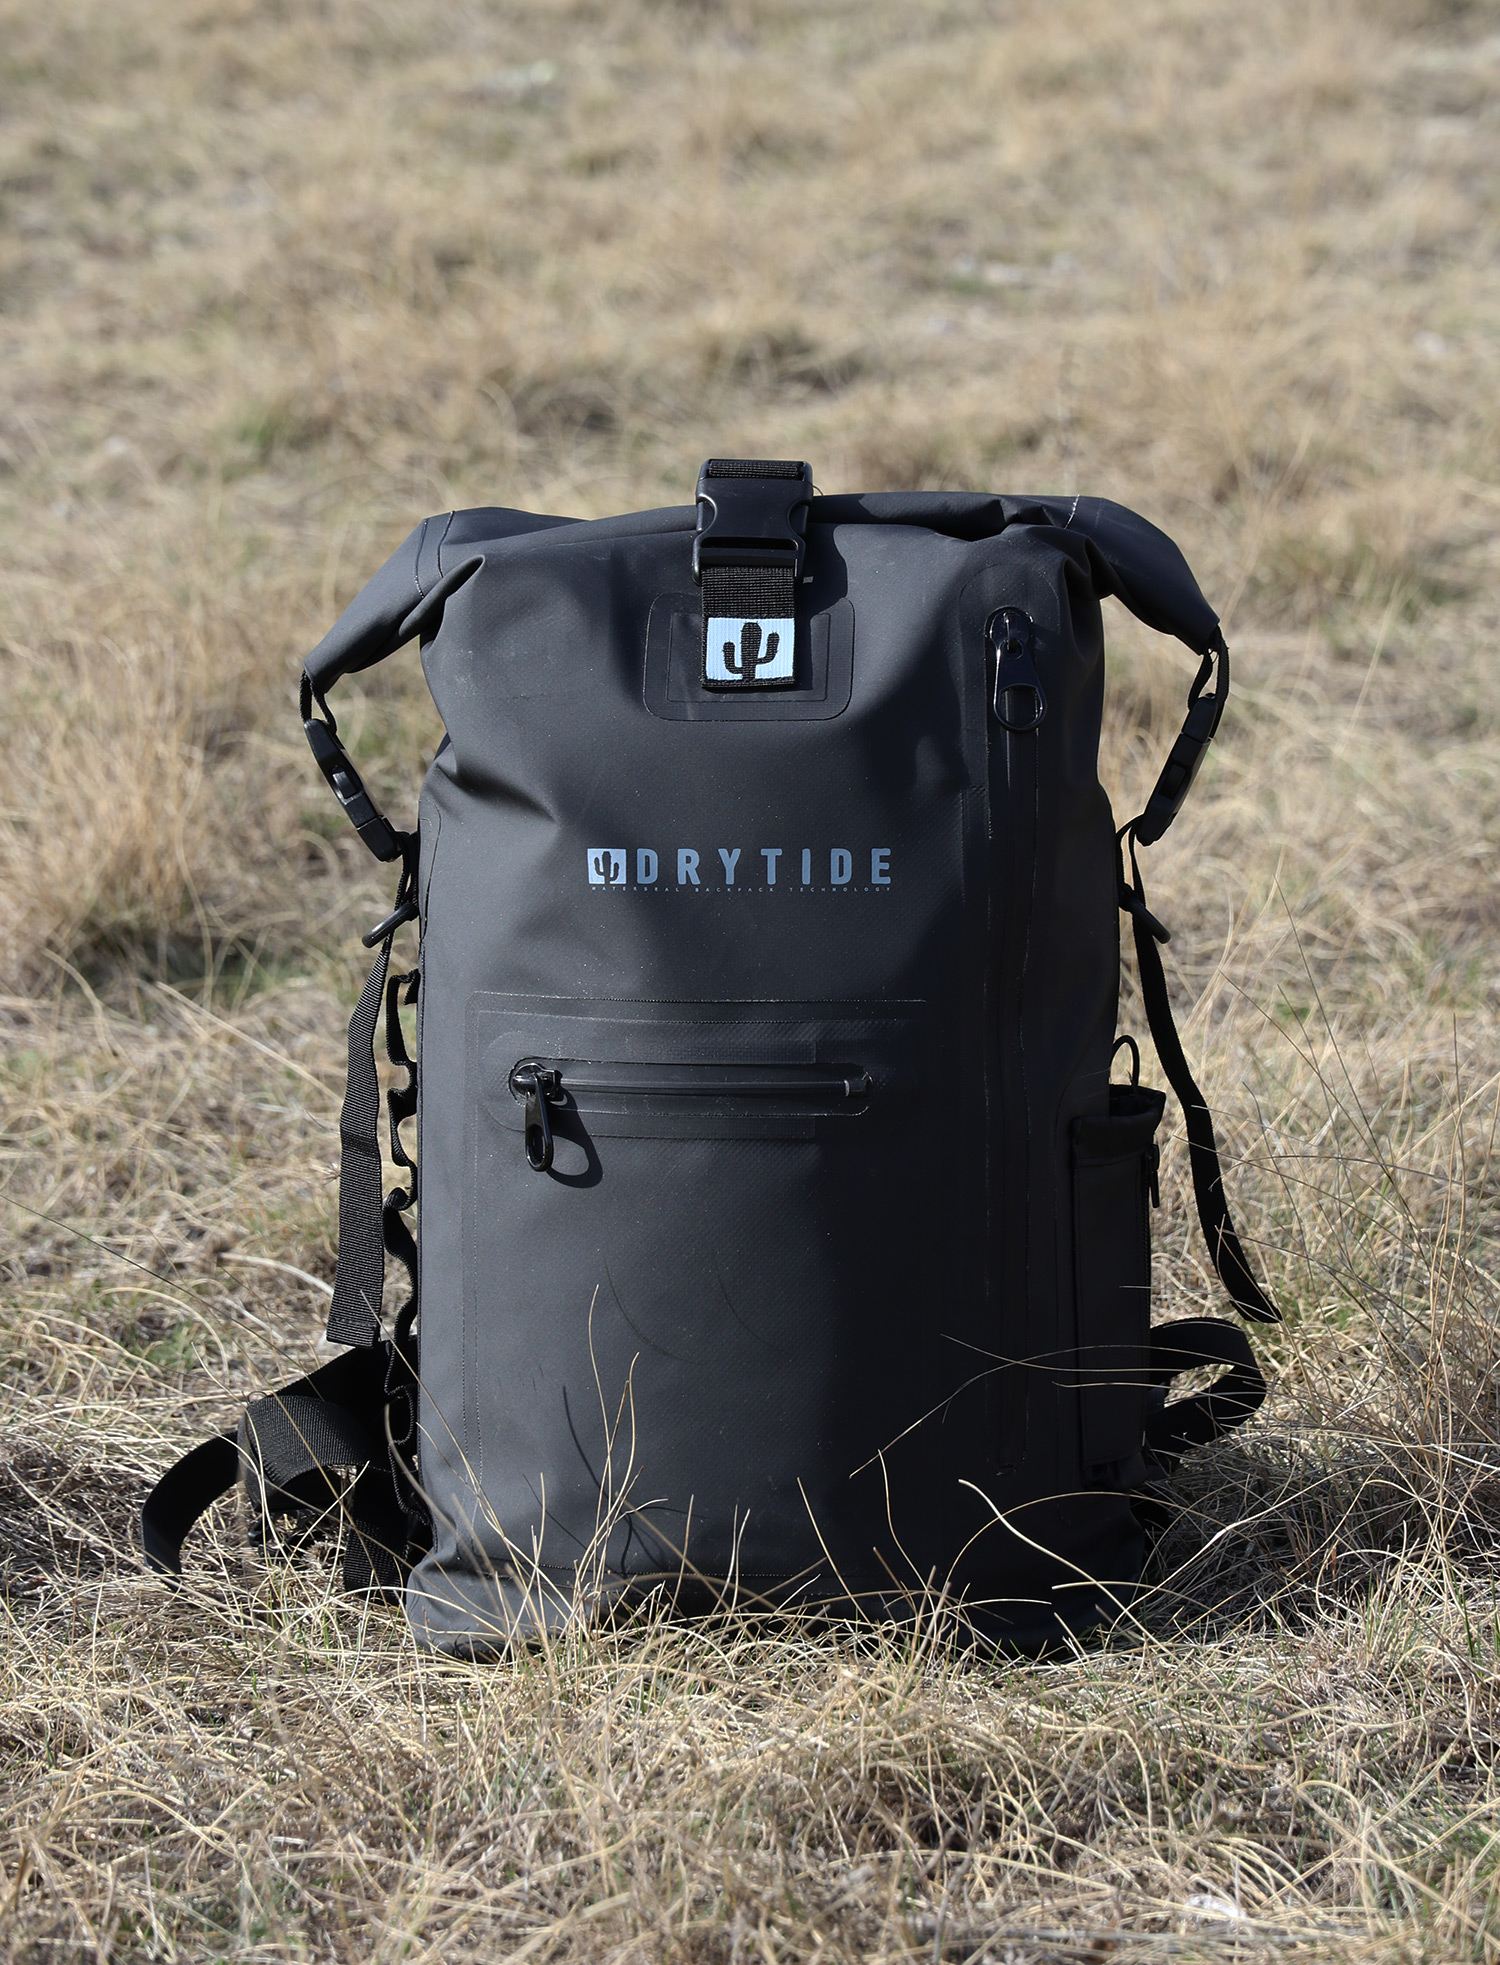 Backpack Straps Adjustable Padded Shoulder Straps For Backpack Dry